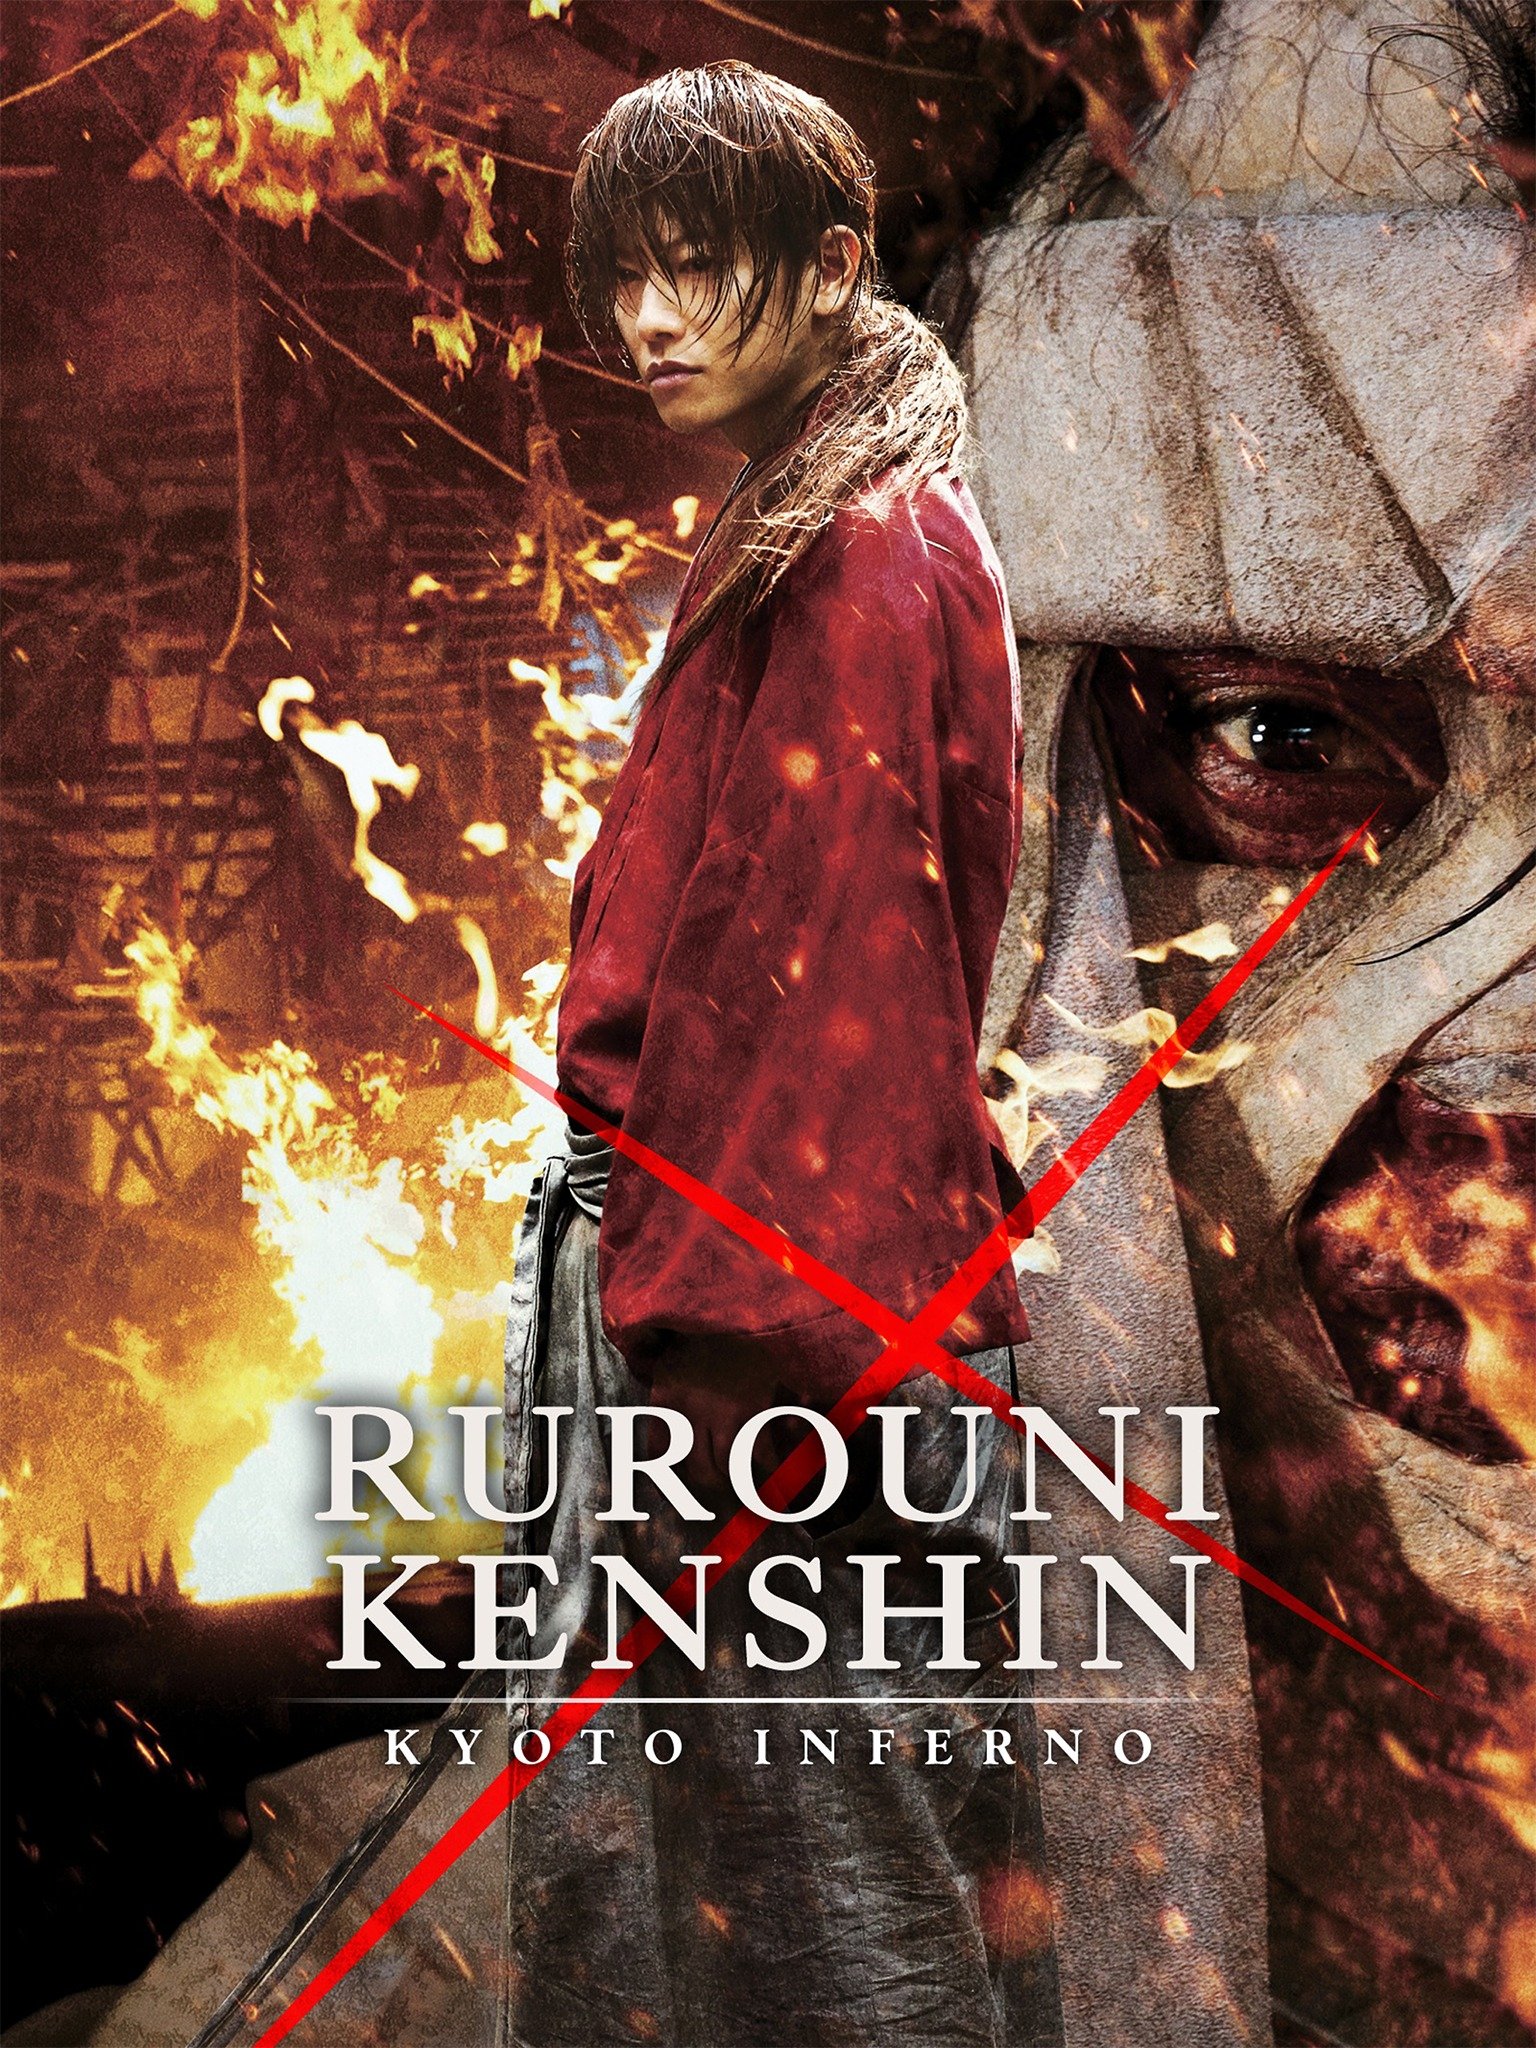 Rurouni Kenshin: 4-Movie Collection (2012-2021) Samurái X: Colección de 4 Películas (2012-2021) P11297759_p_v10_ah